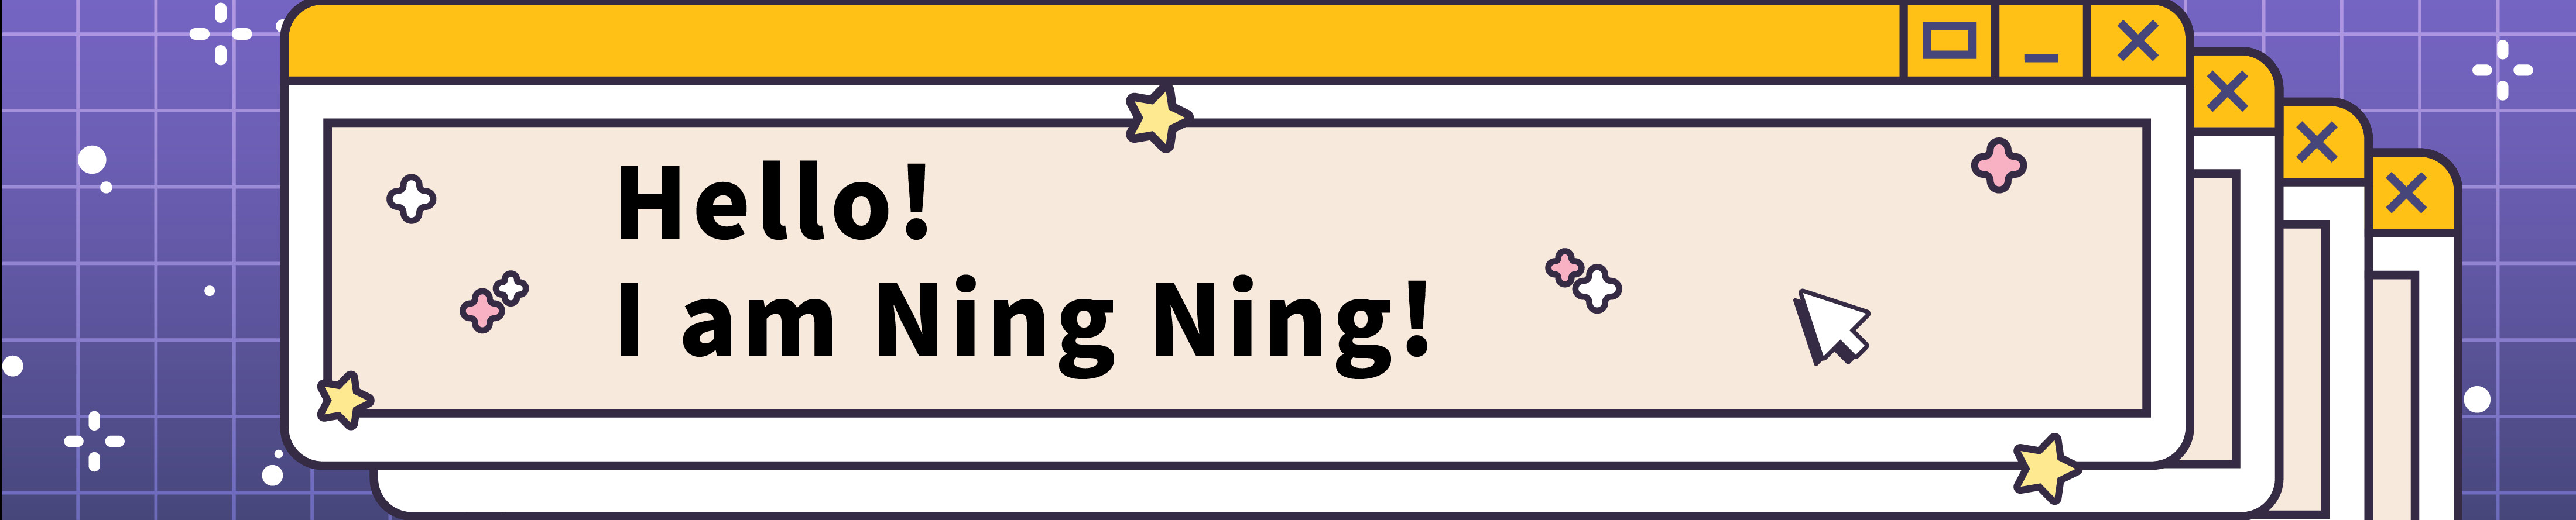 NING-NING CHOU's profile banner